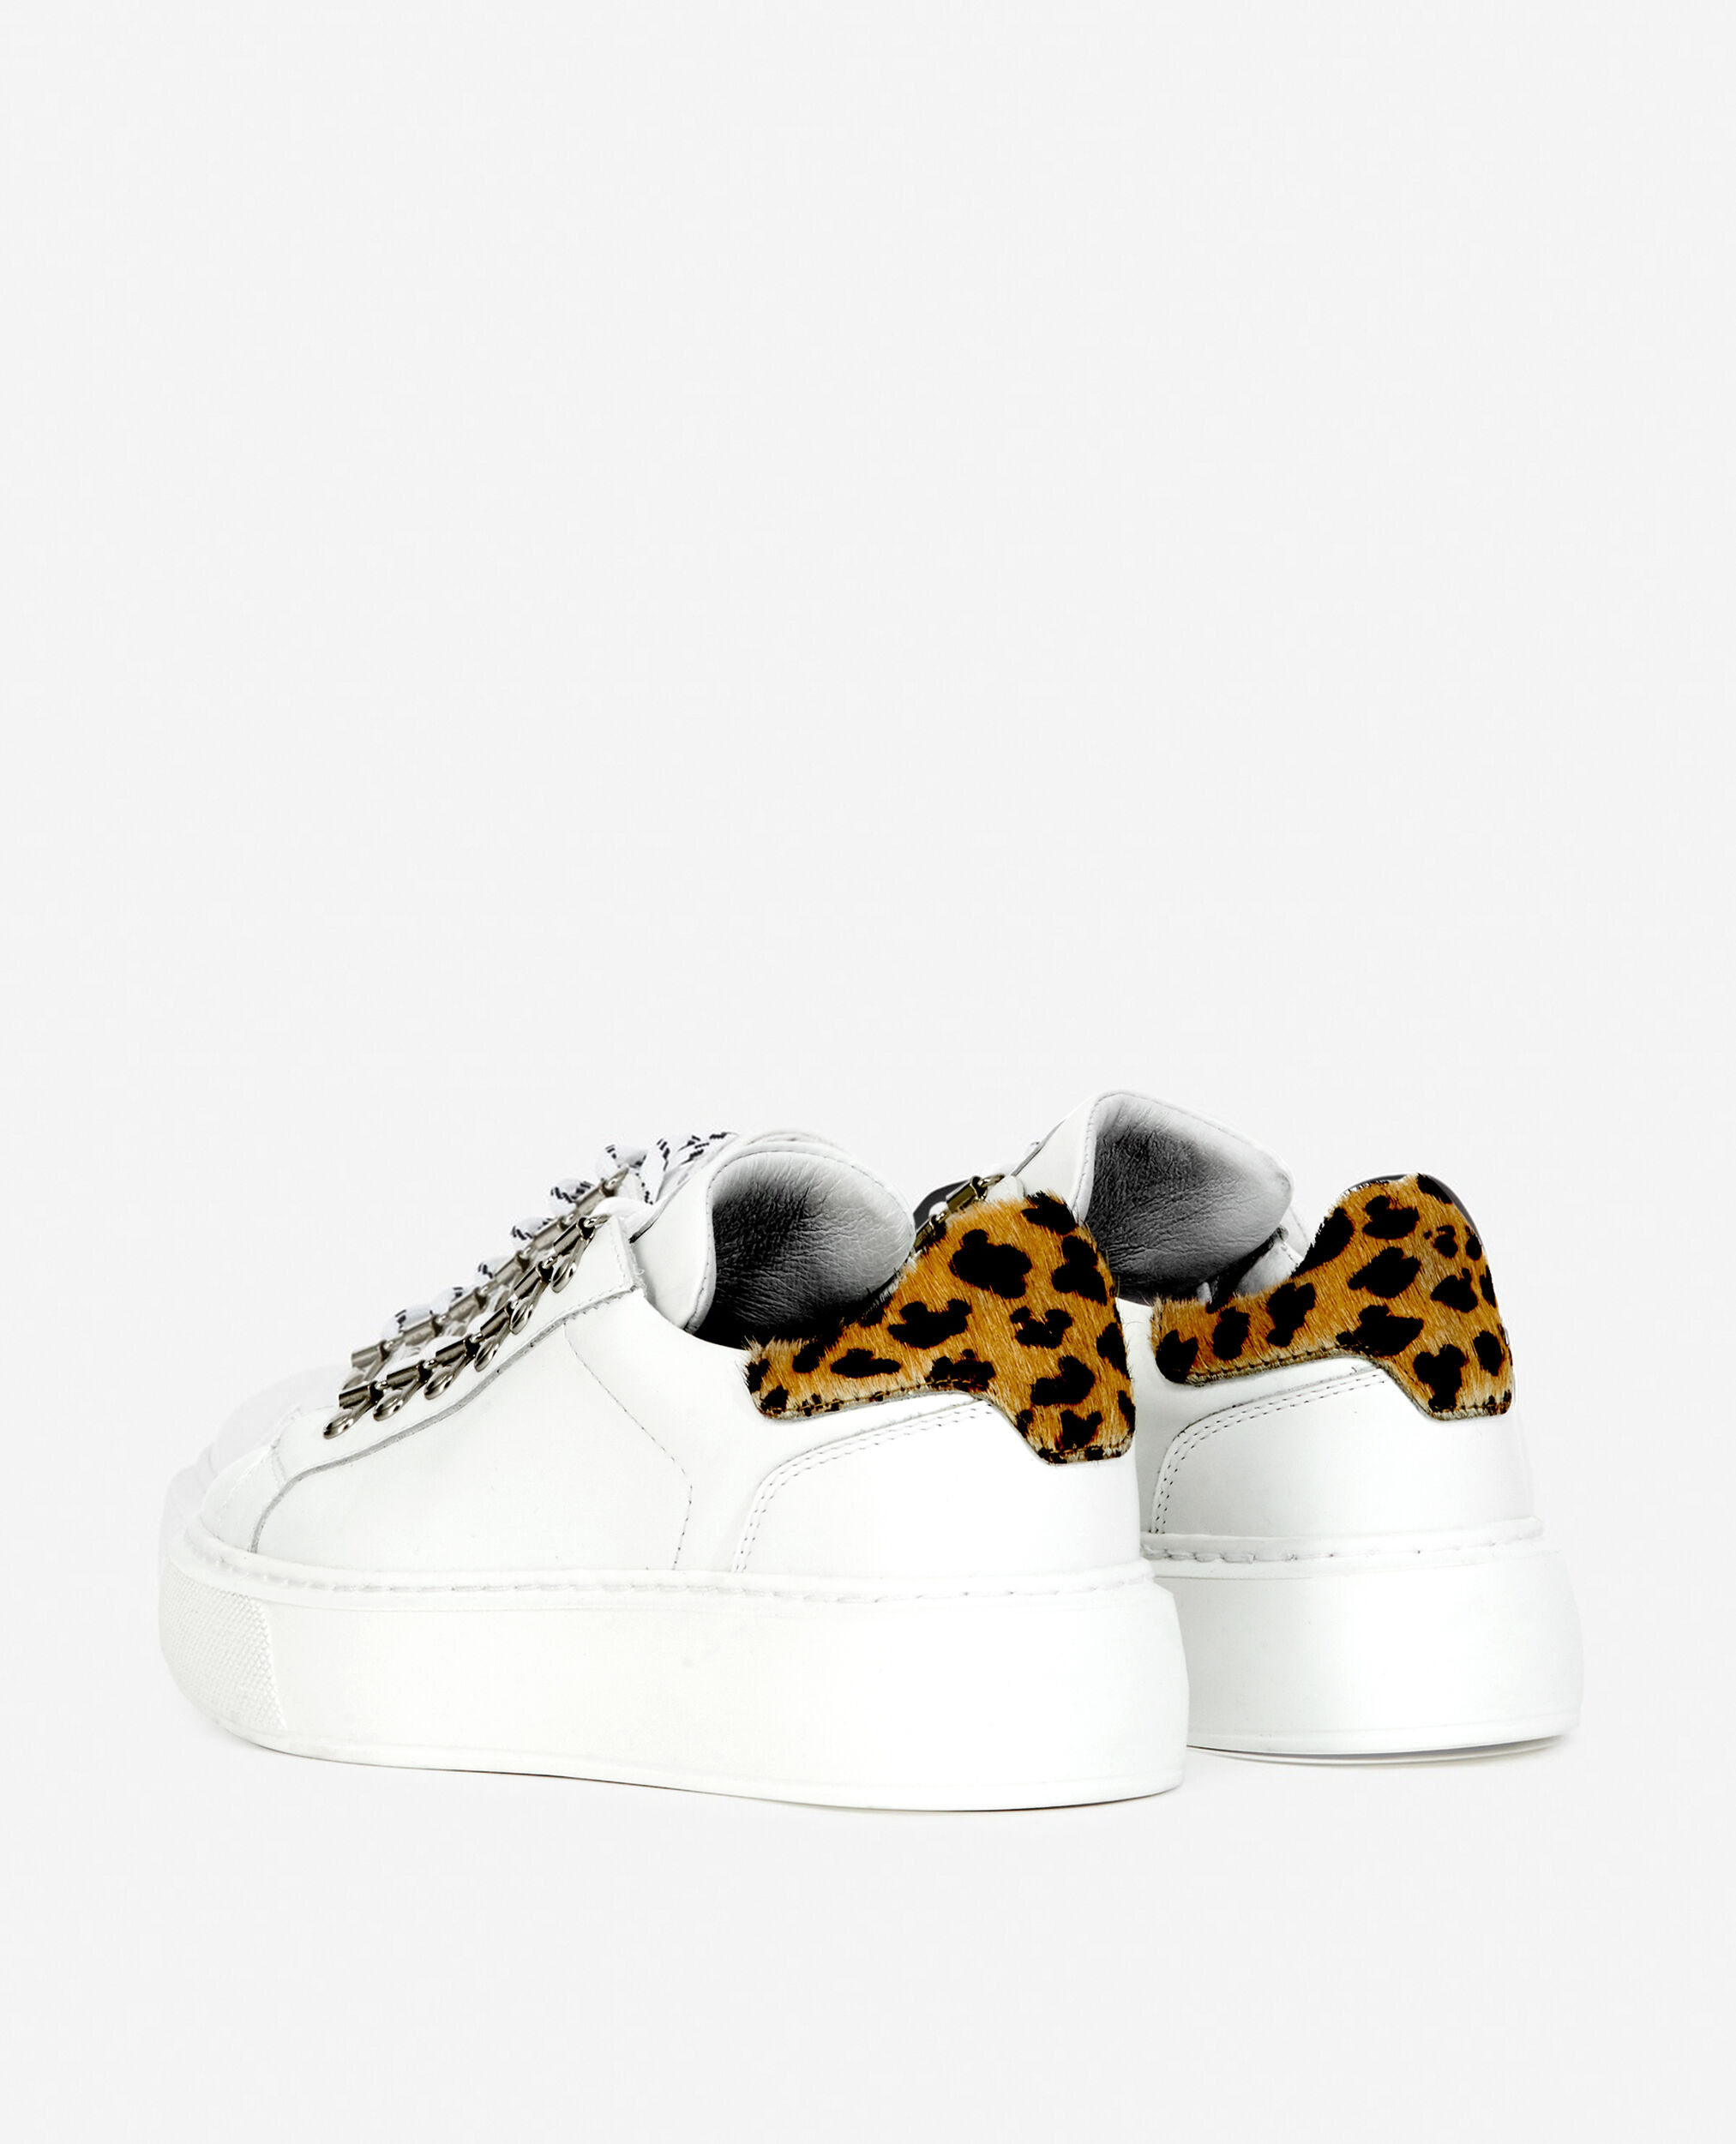 Zapatillas de piel lisa blanca con detalle de leopardo, WHITE LEOPARD, hi-res image number null